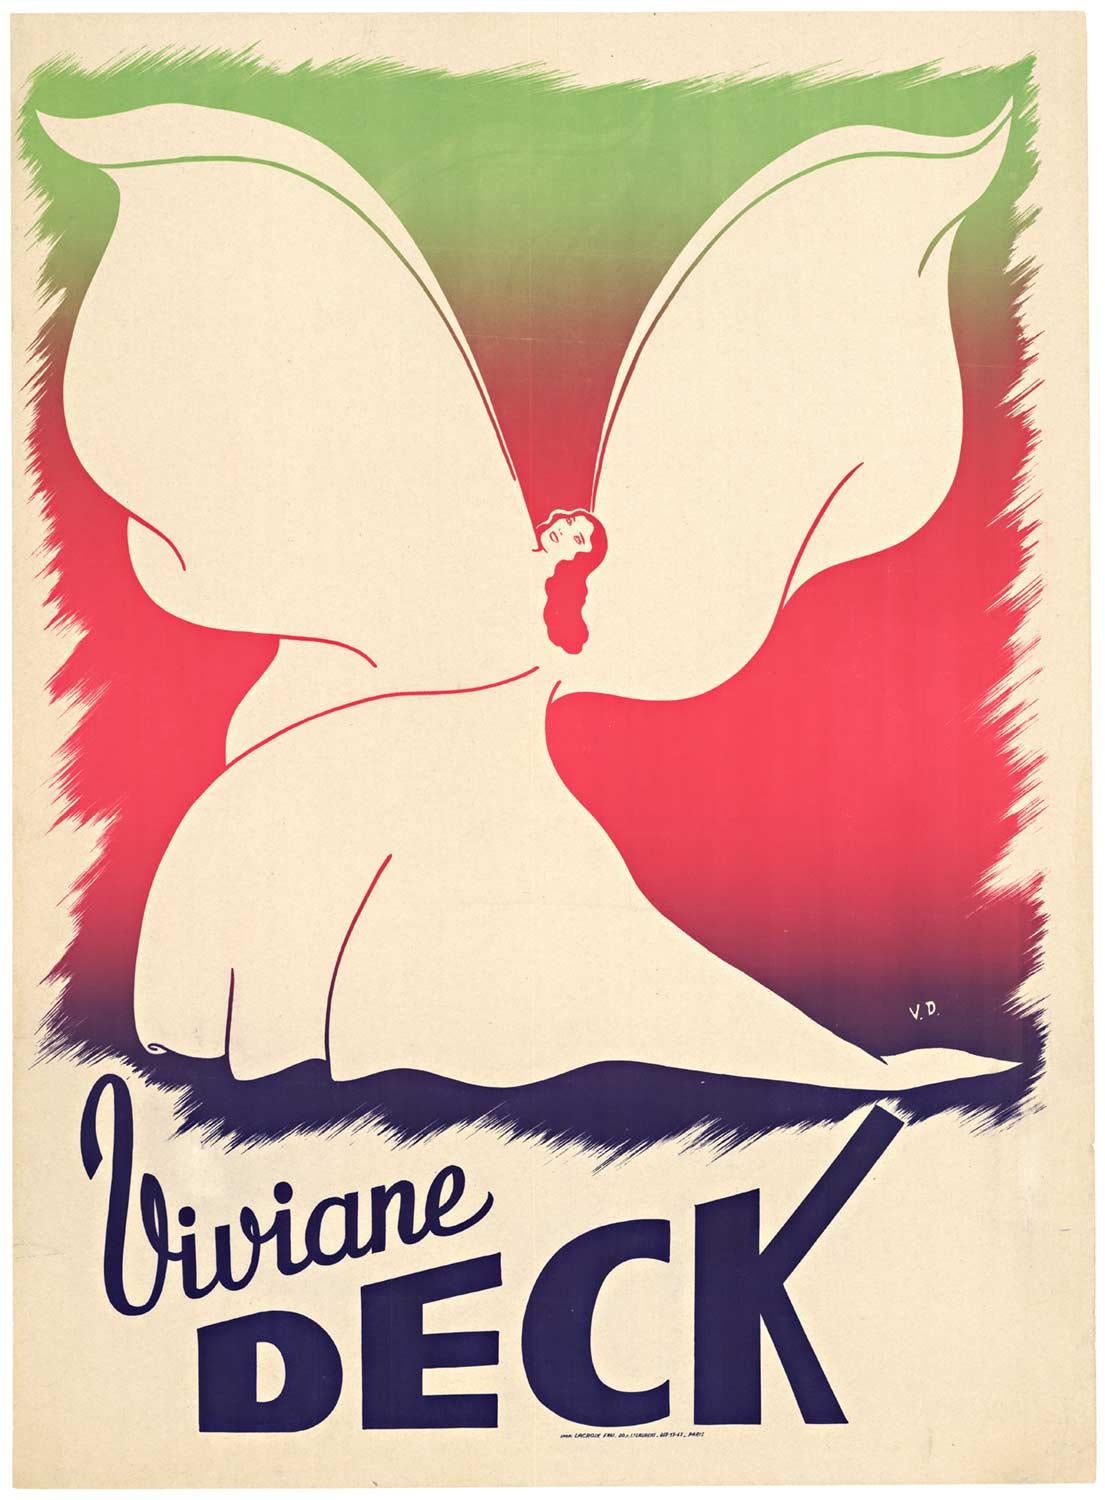 Original "Viviane Deck" personality vintage poster